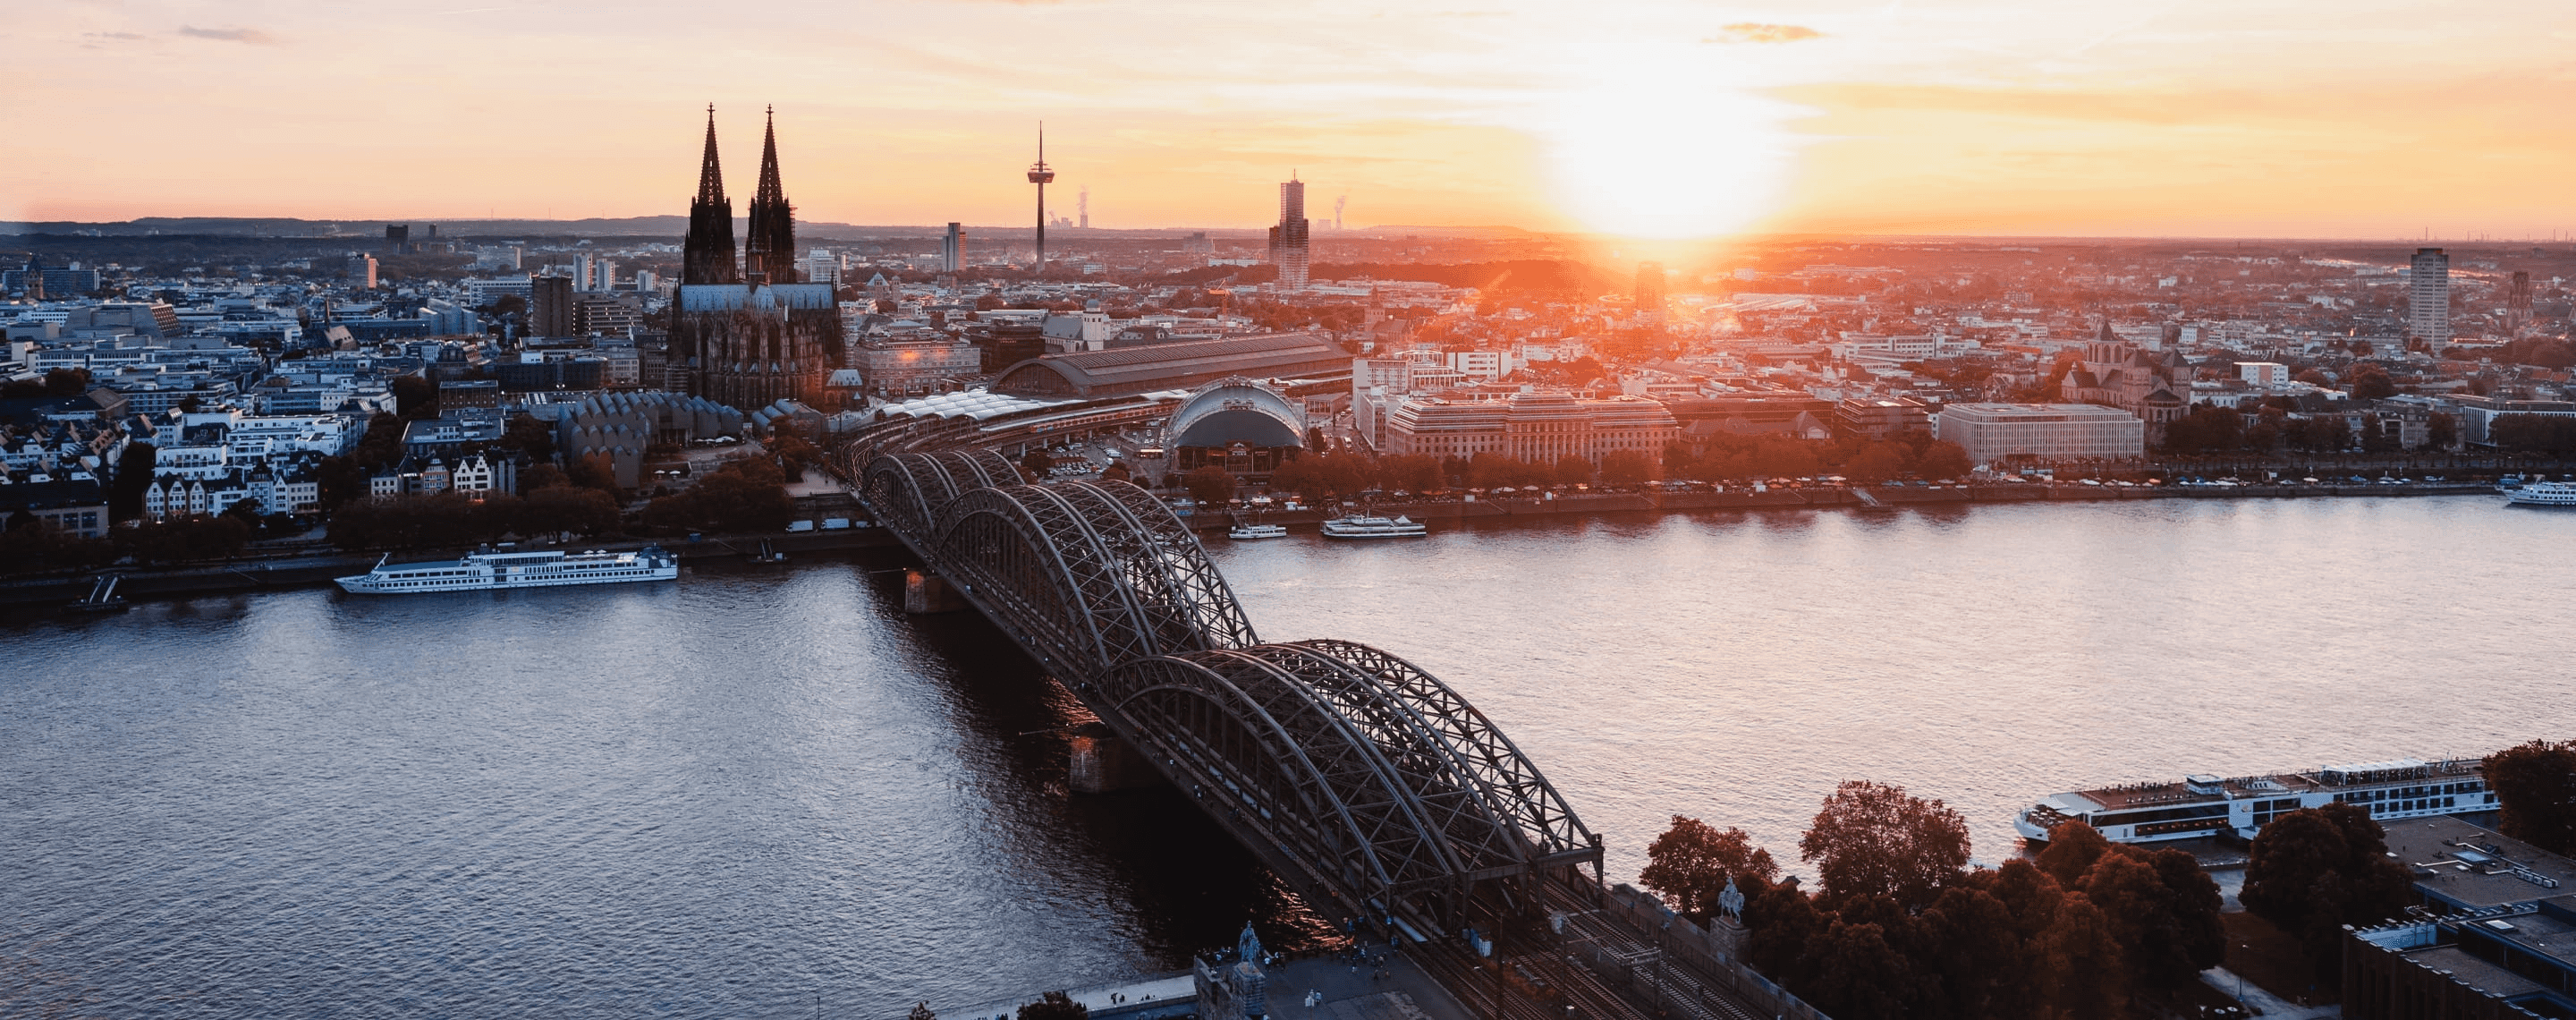 Panoramablick auf Köln mit Dom und Hohenzollernbrücke